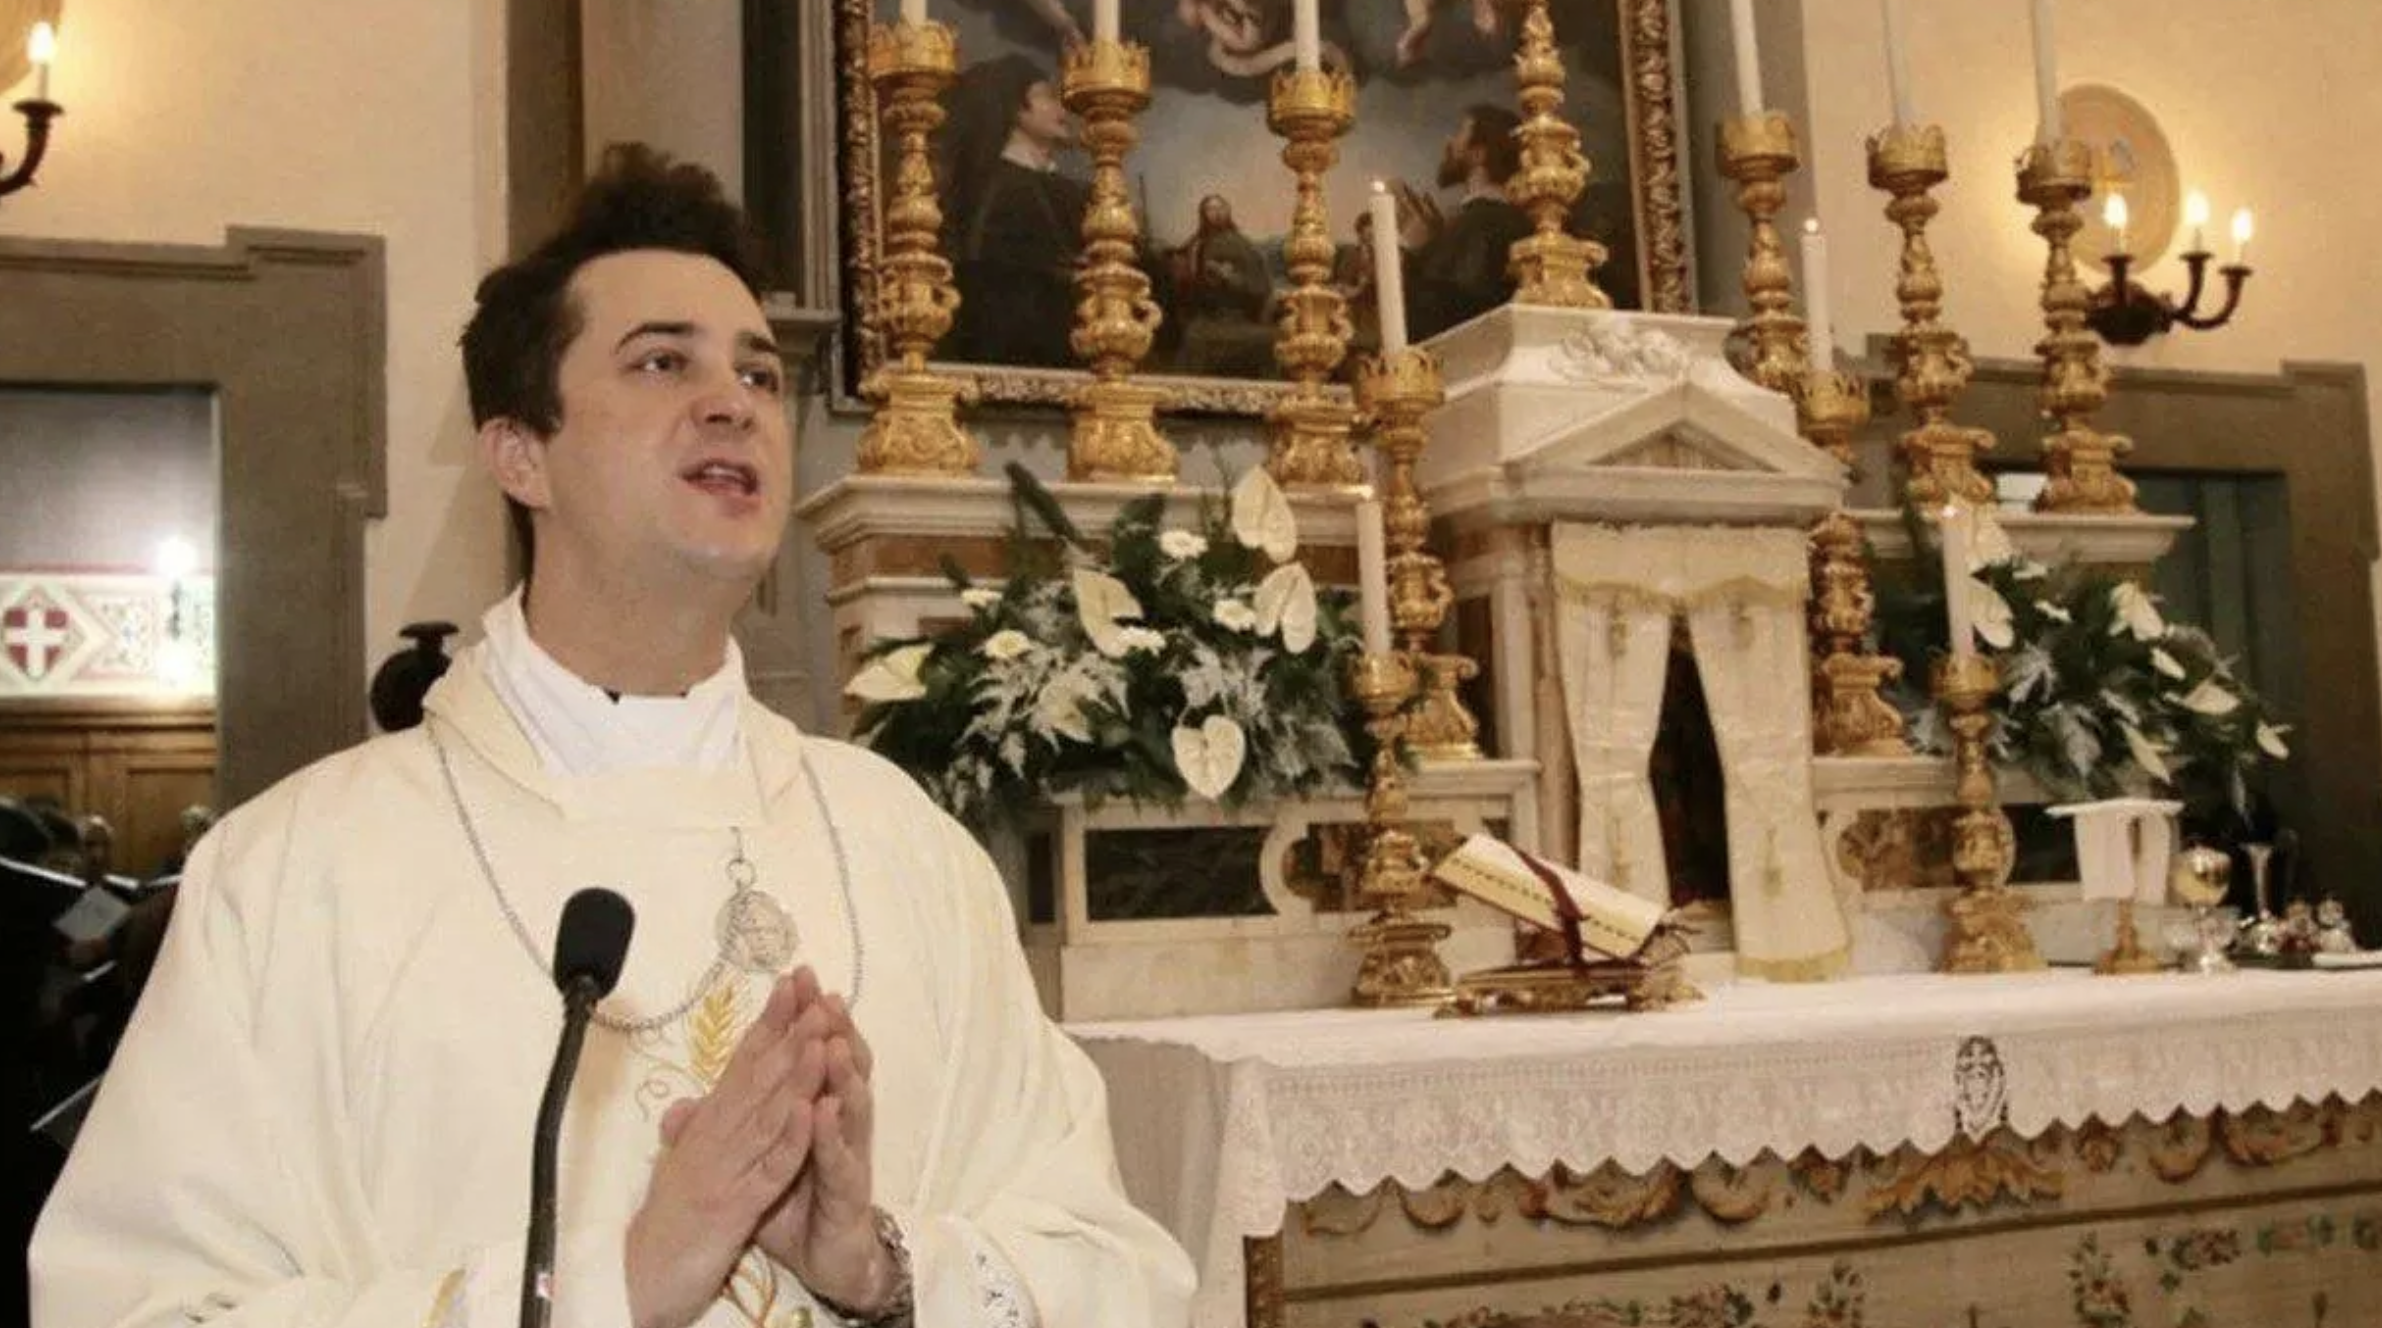 Итальянского священника обвиняют в торговле кокаином. Он продавал его на секс-вечеринках